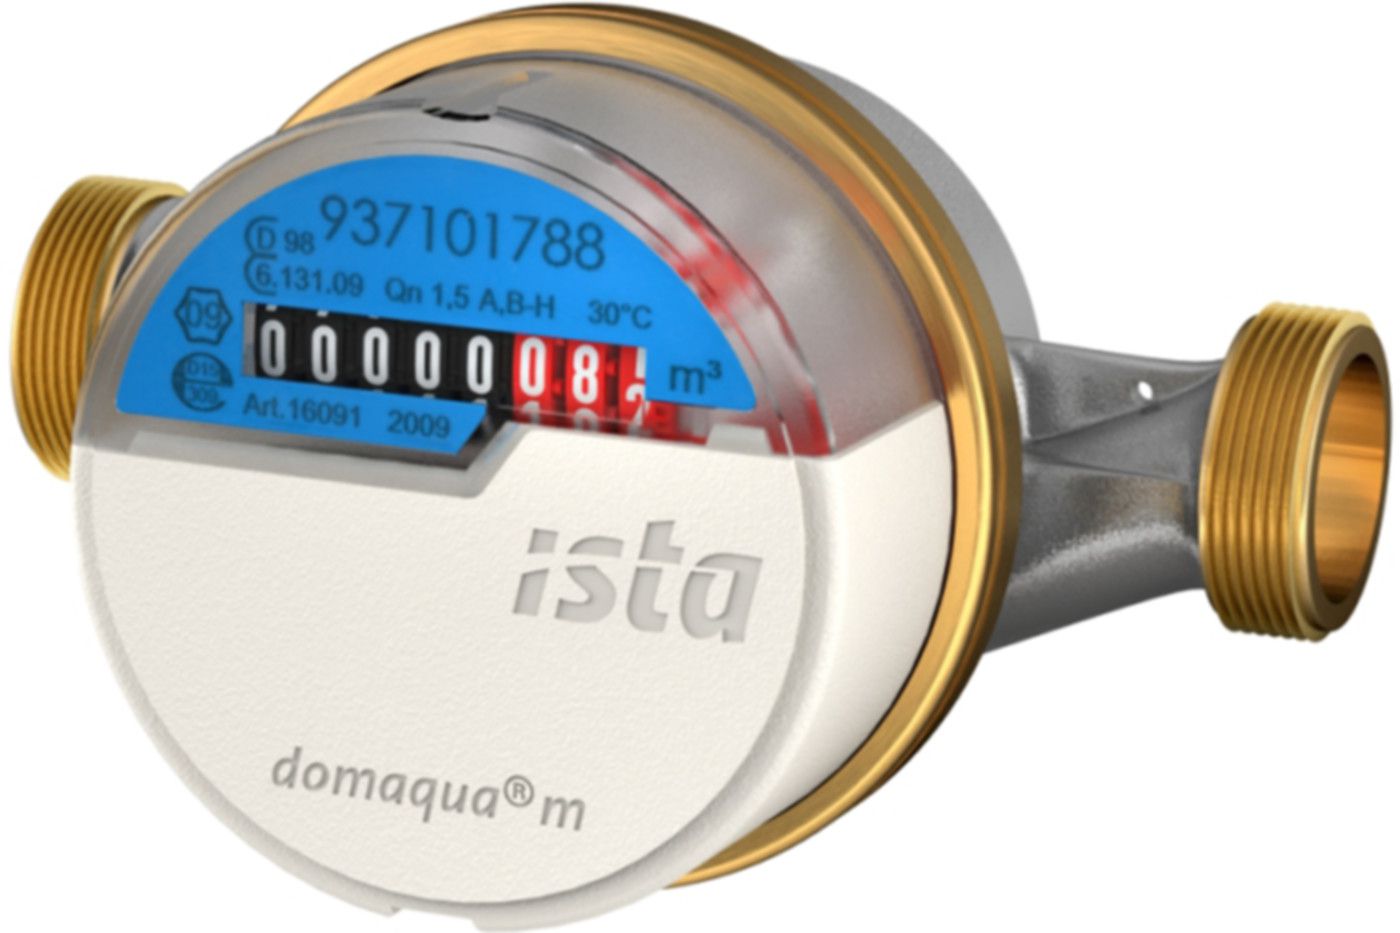 Aufputzzähler Domaqua m DN 15 1/2" G 3/4" - 80 mm kalt 2.5 m3/h  16090 - ISTA - Wärme- / Wasserzähler